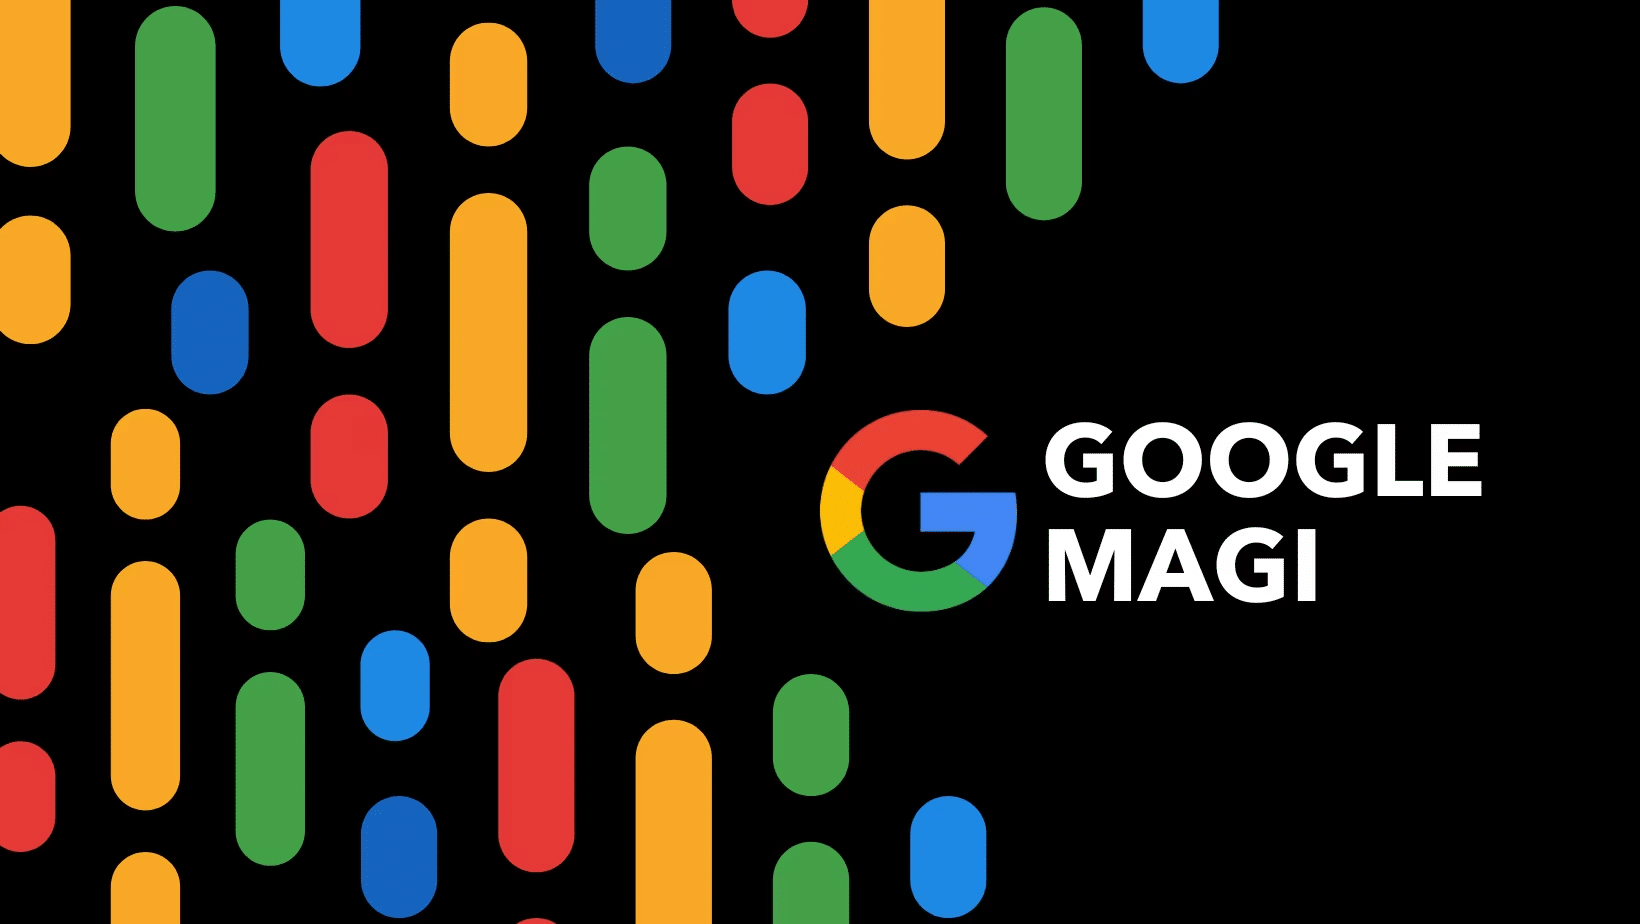 Google's project magi